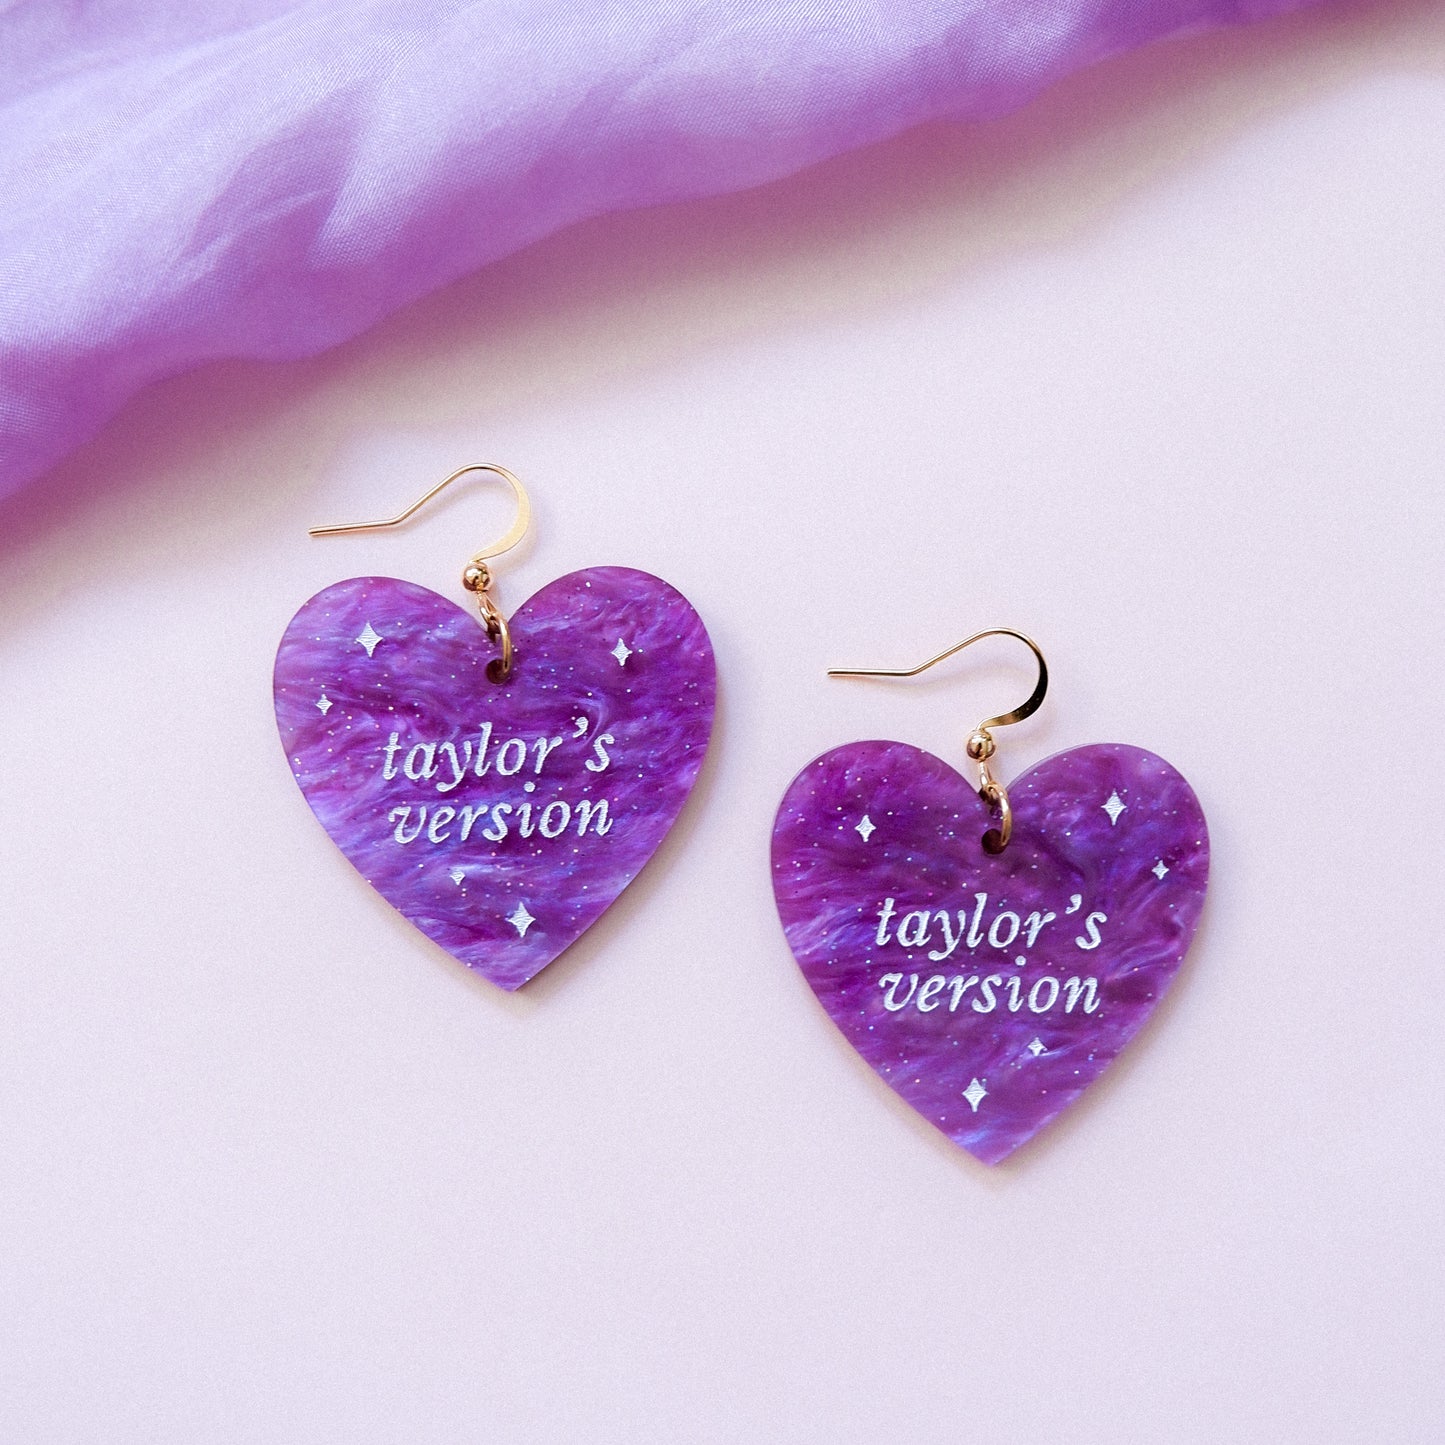 taylor's version - taylor swift earrings